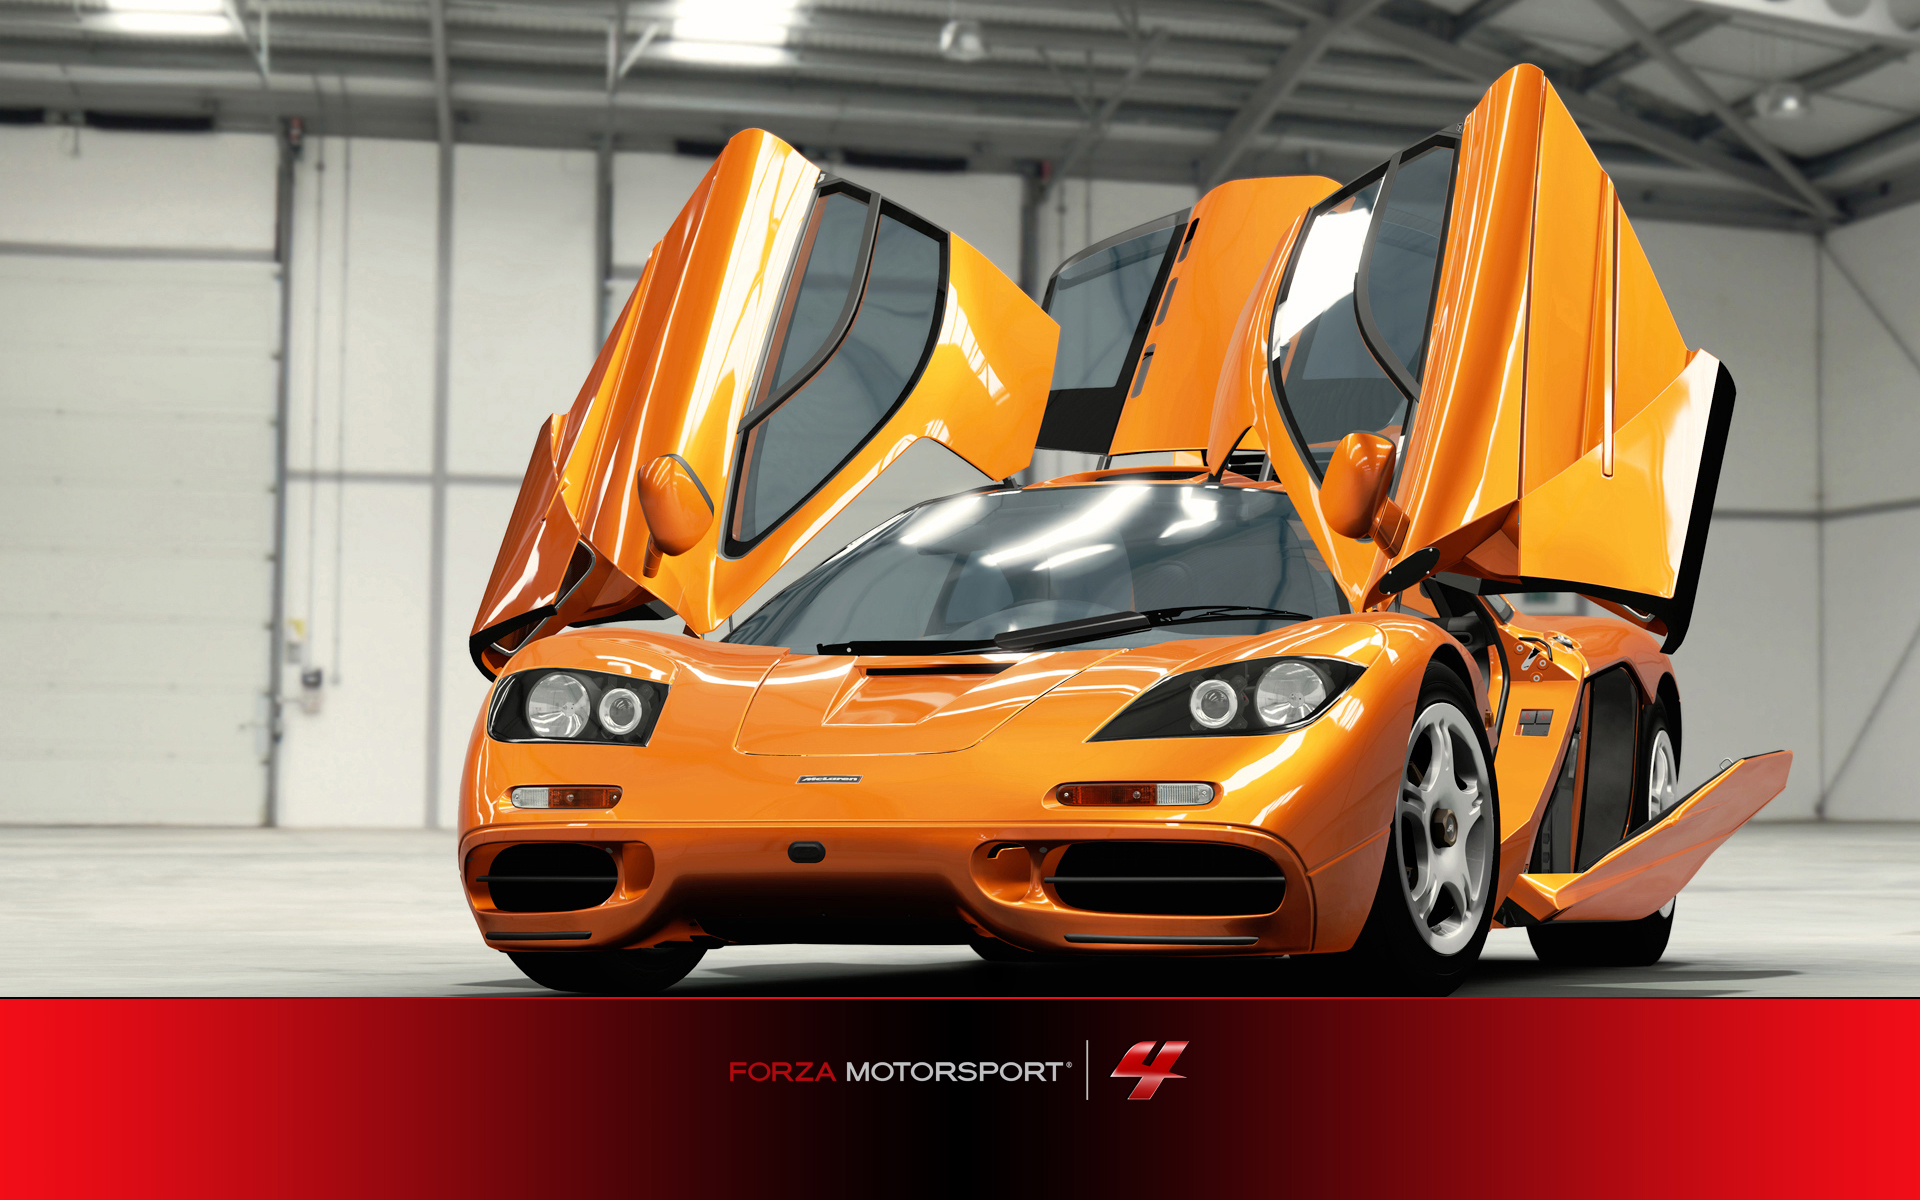 Télécharger des fonds d'écran Forza Motorsport 4 HD